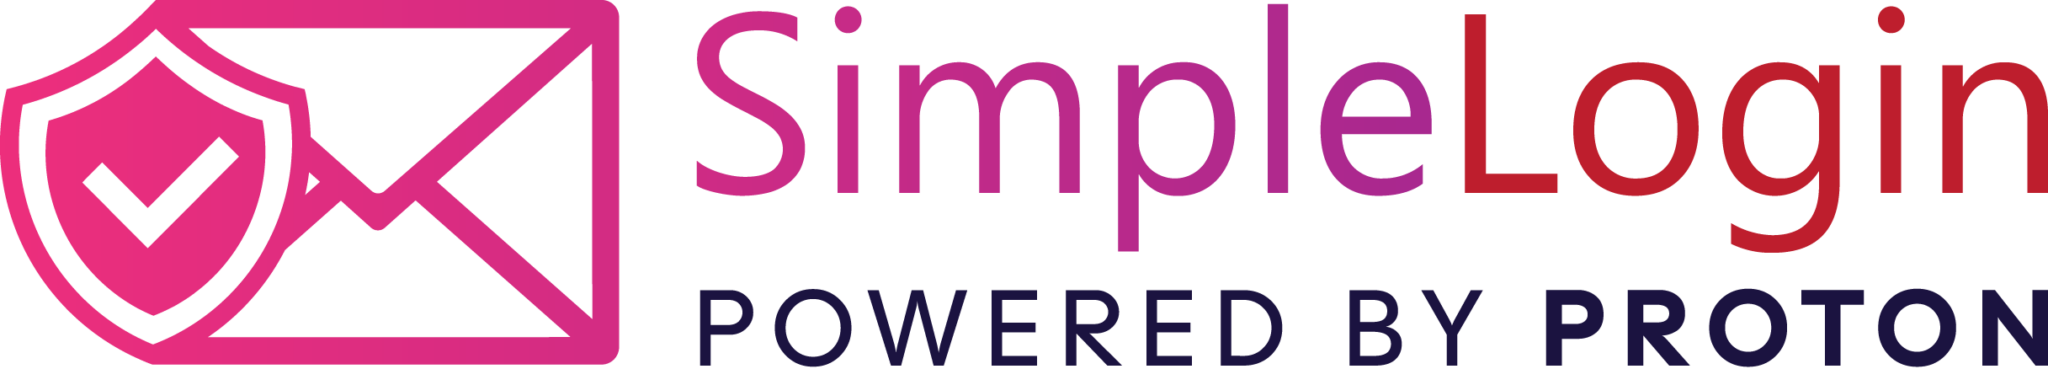 simplelogin logo